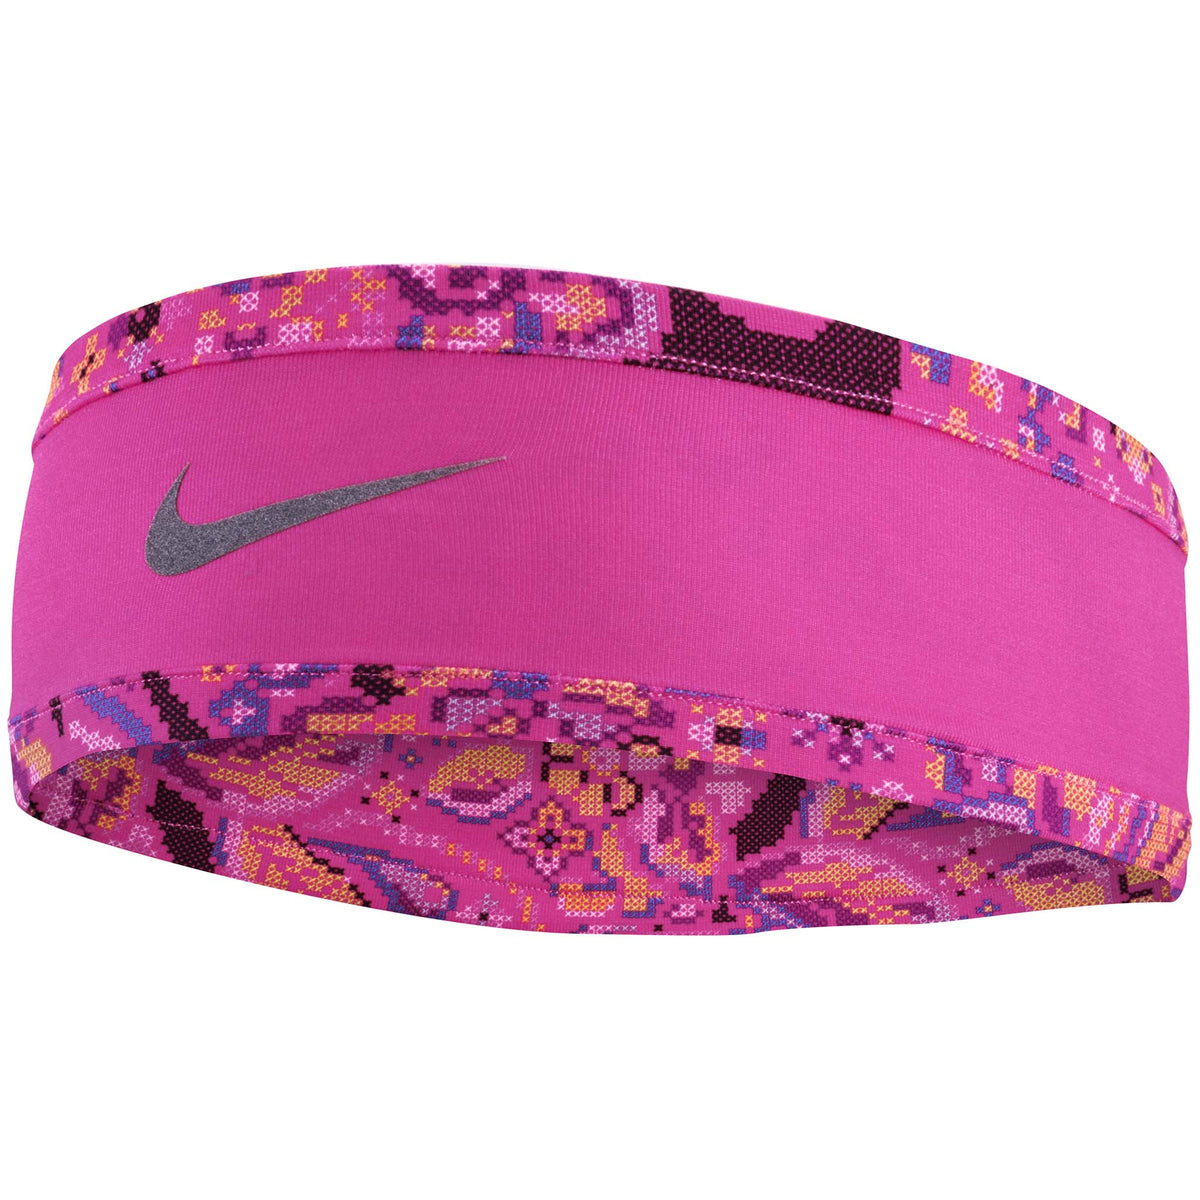 Nike Run Dry gants et bandeau de course à pied femme - Soccer